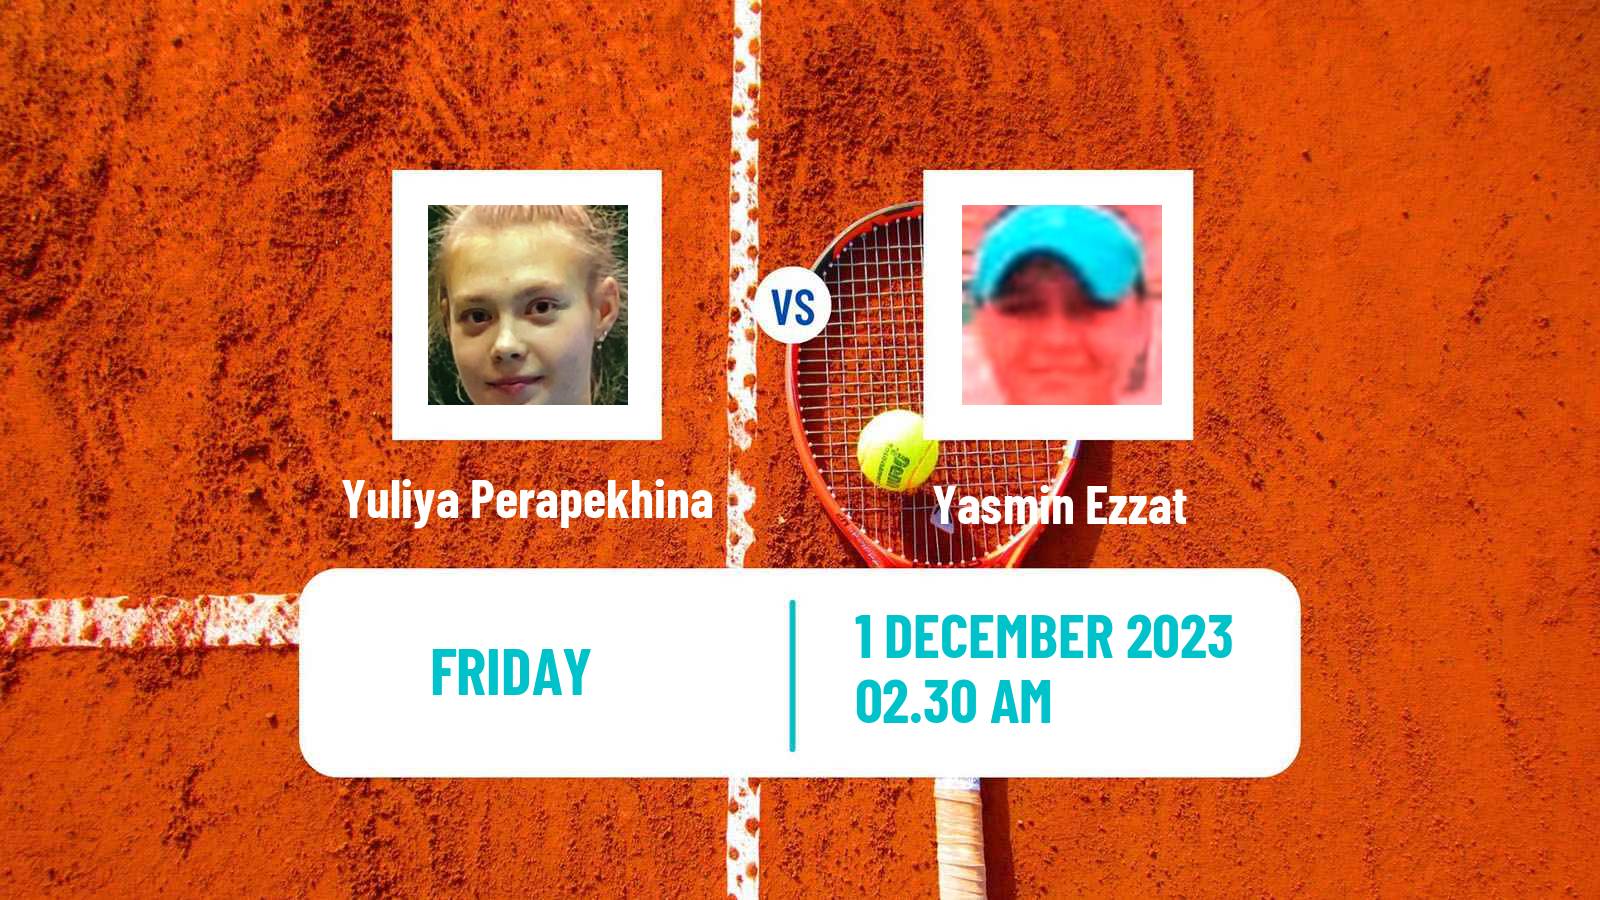 Tennis ITF W15 Sharm Elsheikh 20 Women Yuliya Perapekhina - Yasmin Ezzat